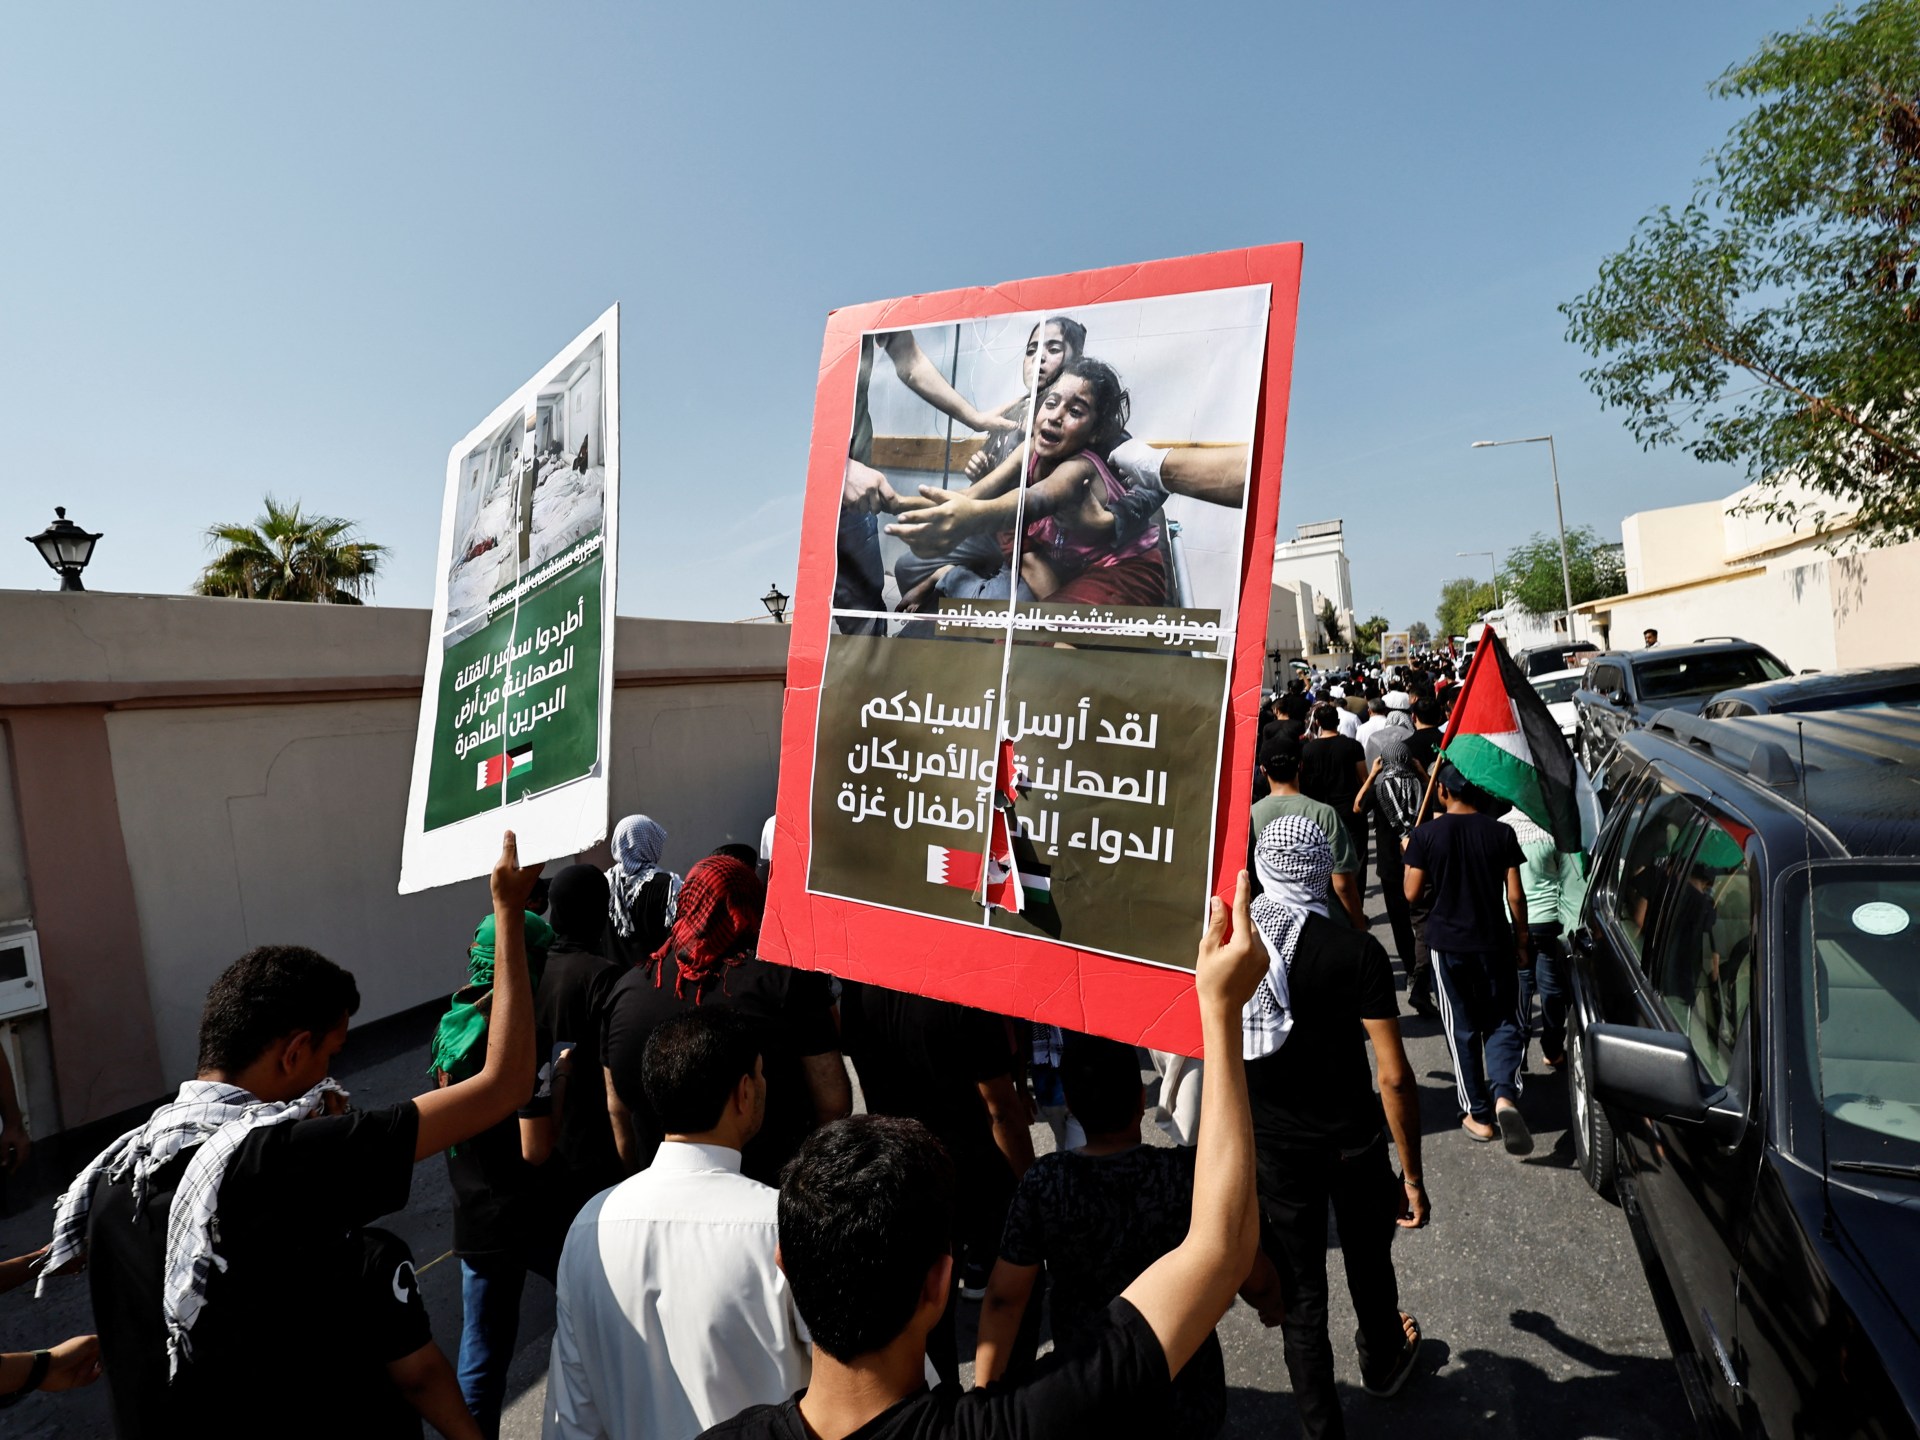 غزہ پر بڑھتے ہوئے حملوں کے پیش نظر بحرین نے اسرائیل سے اپنا سفیر واپس بلا لیا